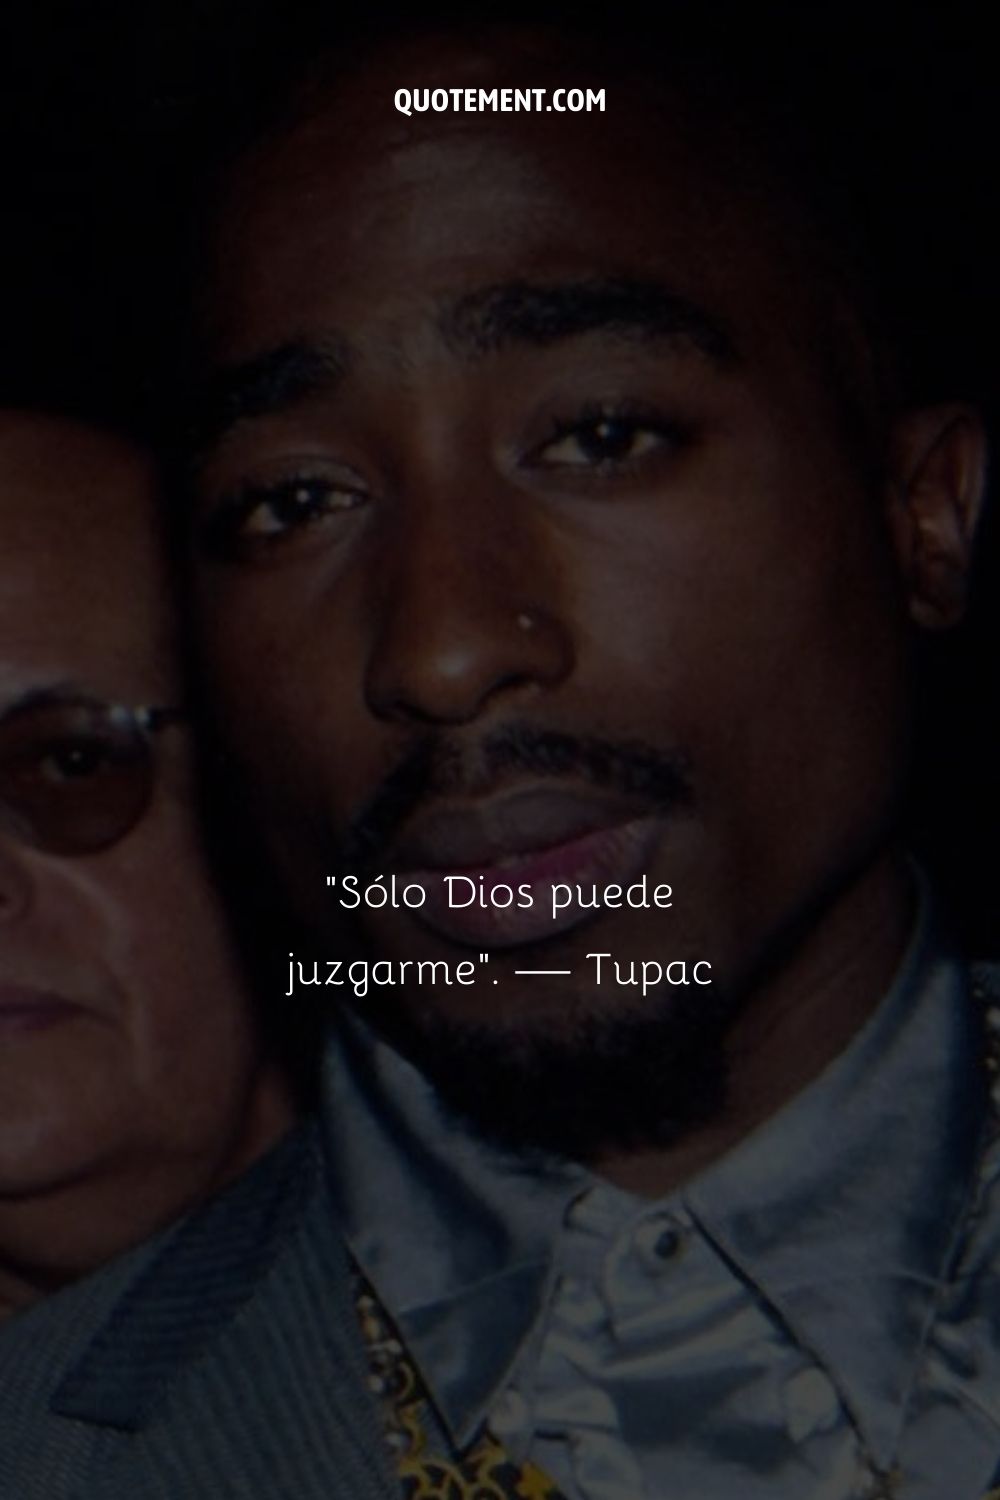 La cita más famosa de Tupac.